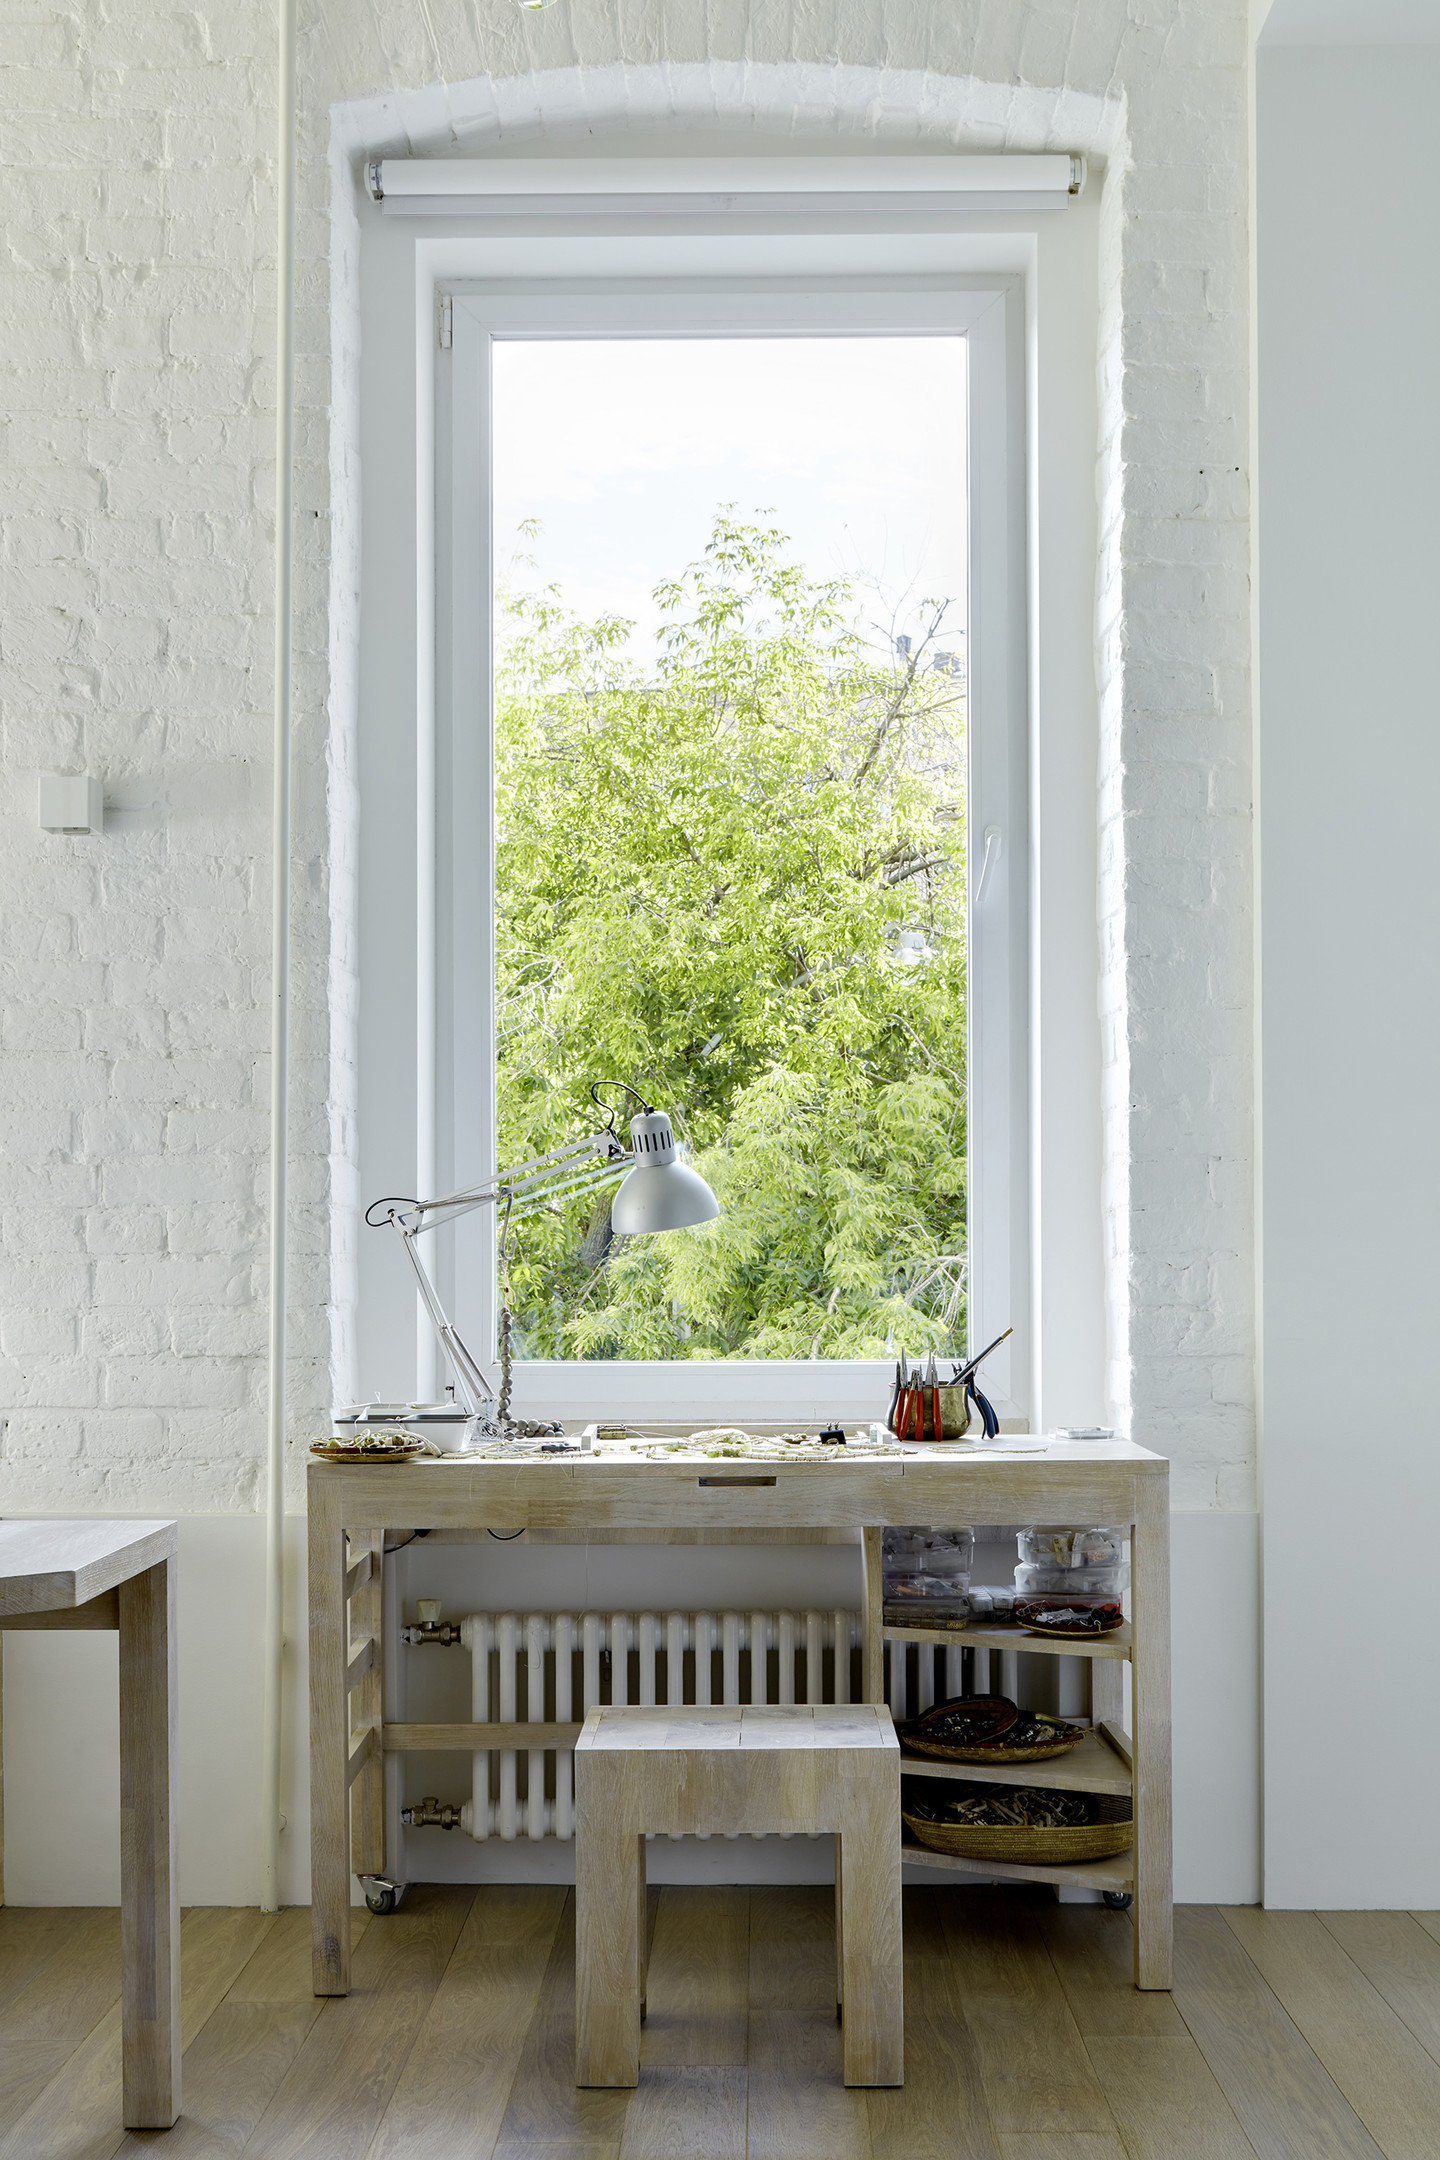 Góc làm việc nhỏ nhưng vô cùng xinh xắn này được thực hiện bởi NTK Svetlana Nesterushkina. Nội thất đơn giản với bộ bàn ghế gỗ sáng màu, bên ngoài khung cửa là vẻ đẹp của những tán cây xanh rì rào trong gió, đẹp hơn bất cứ bức tranh vẽ nào.